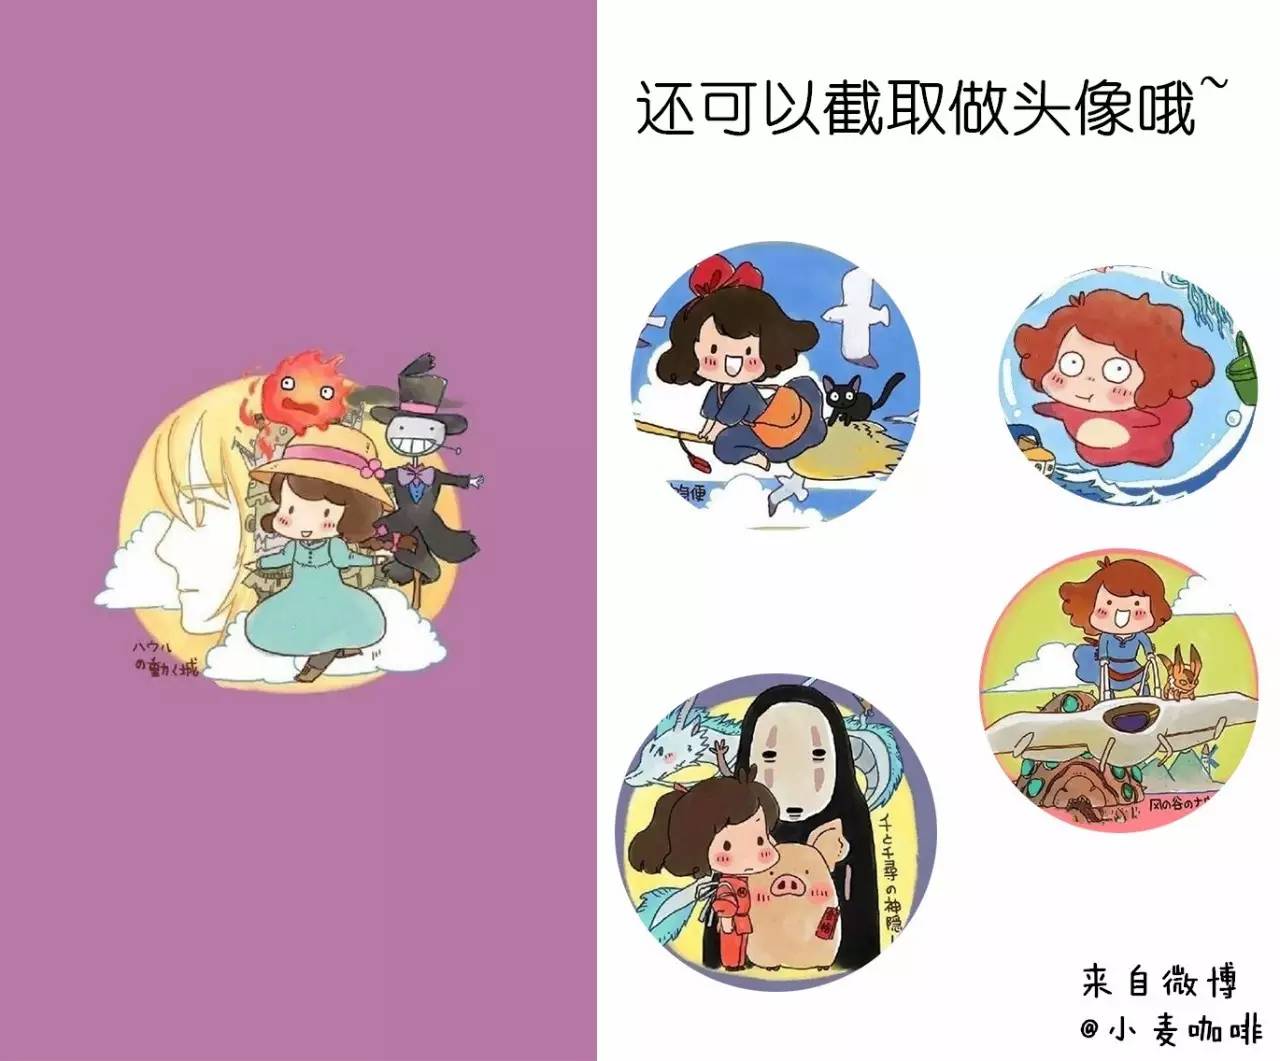 推荐 | 唯美动漫壁纸，宫崎骏的童话风景